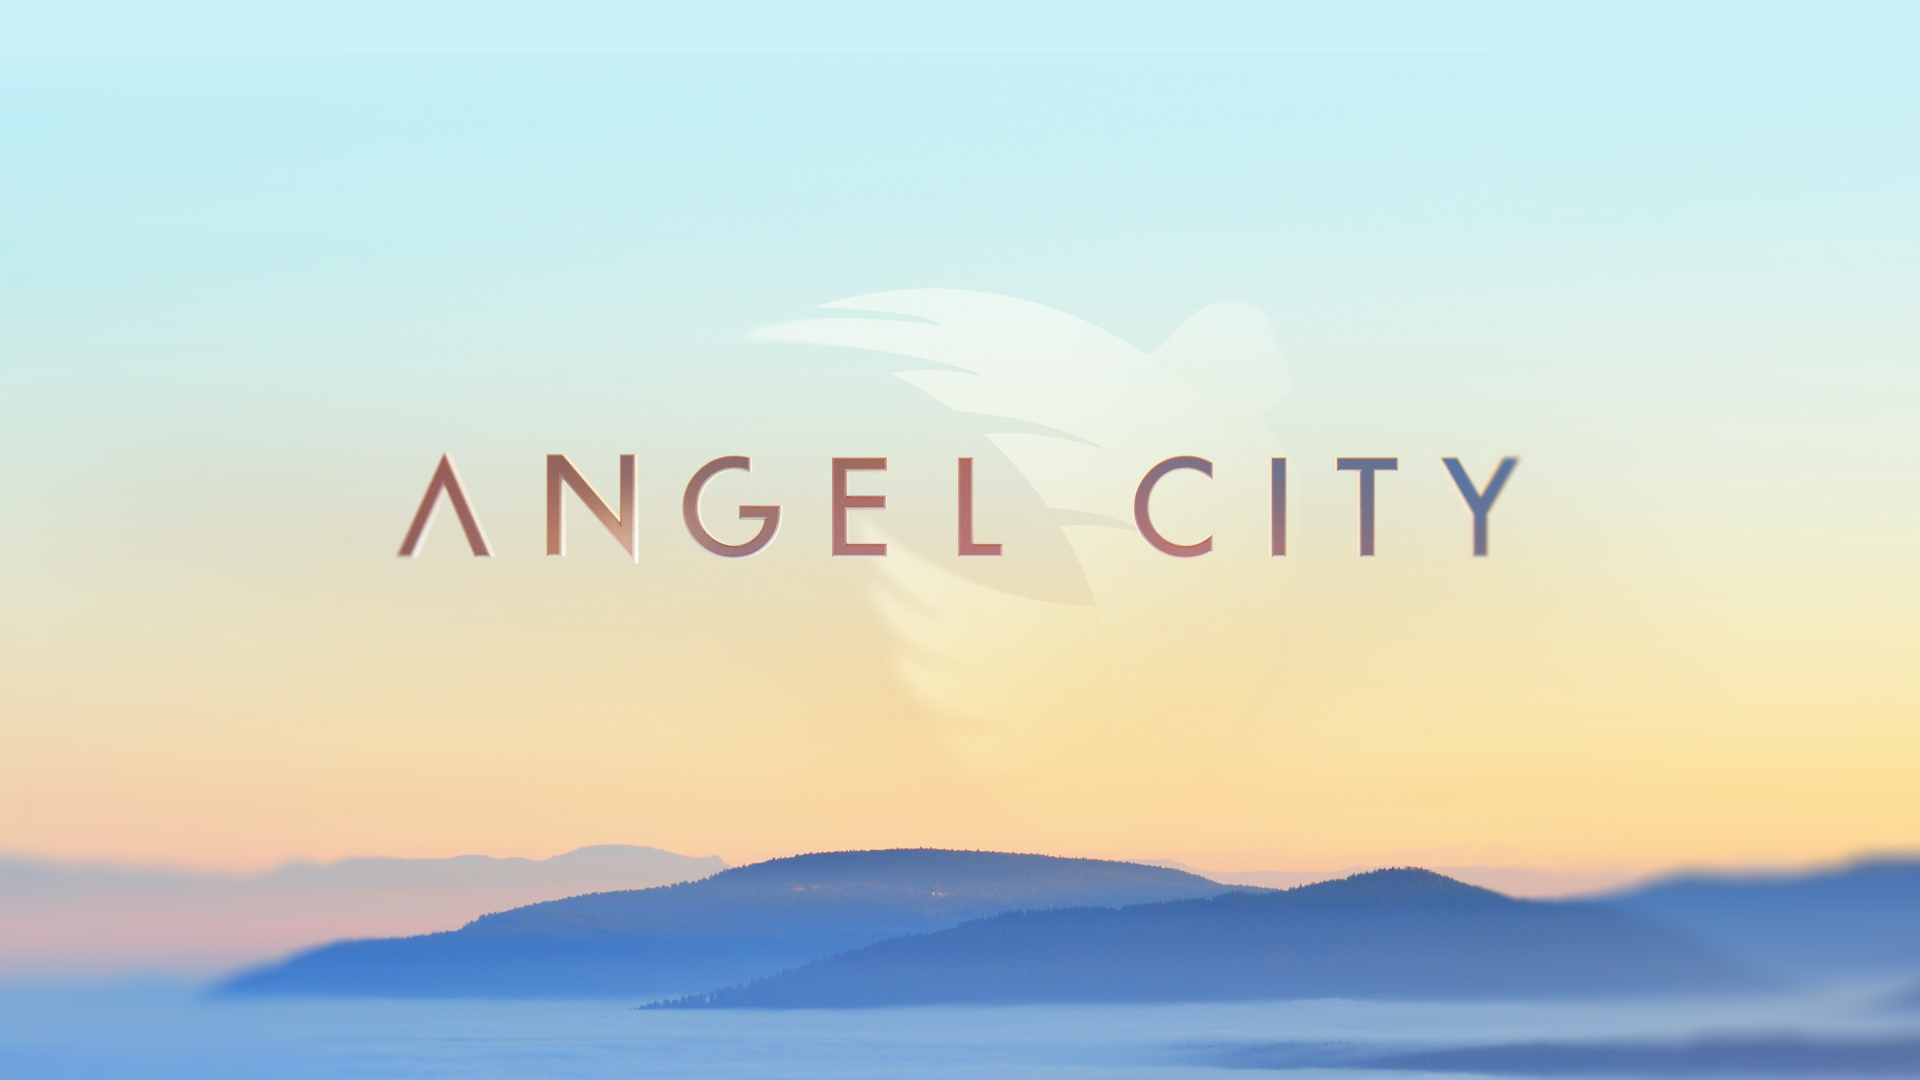 Angel-city-v9-01.png